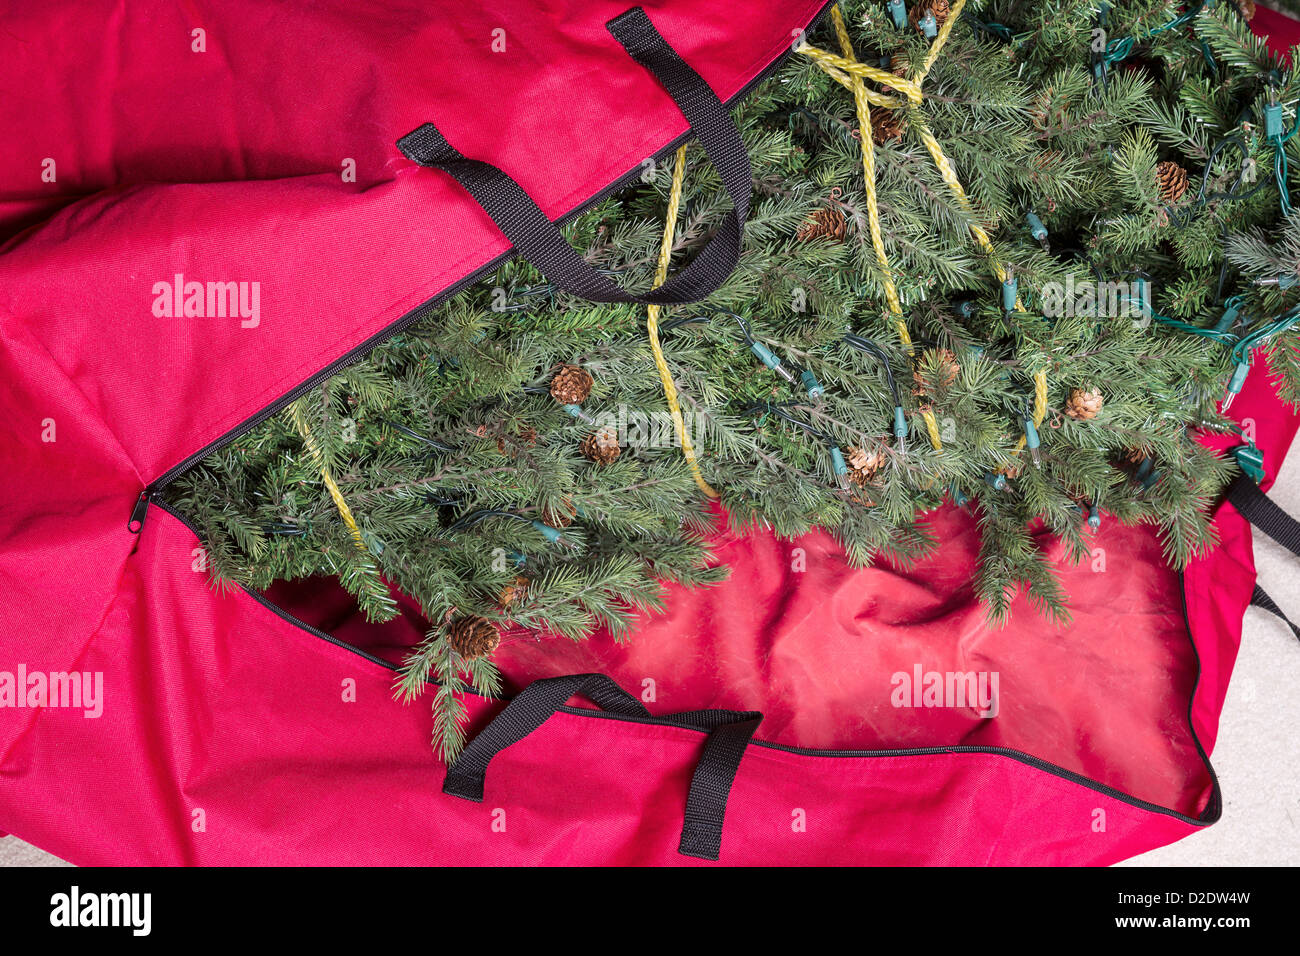 Grand arbre de Noël artificiel d'être placés dans un sac à glissière en nylon rouge pour la saison prochaine Banque D'Images